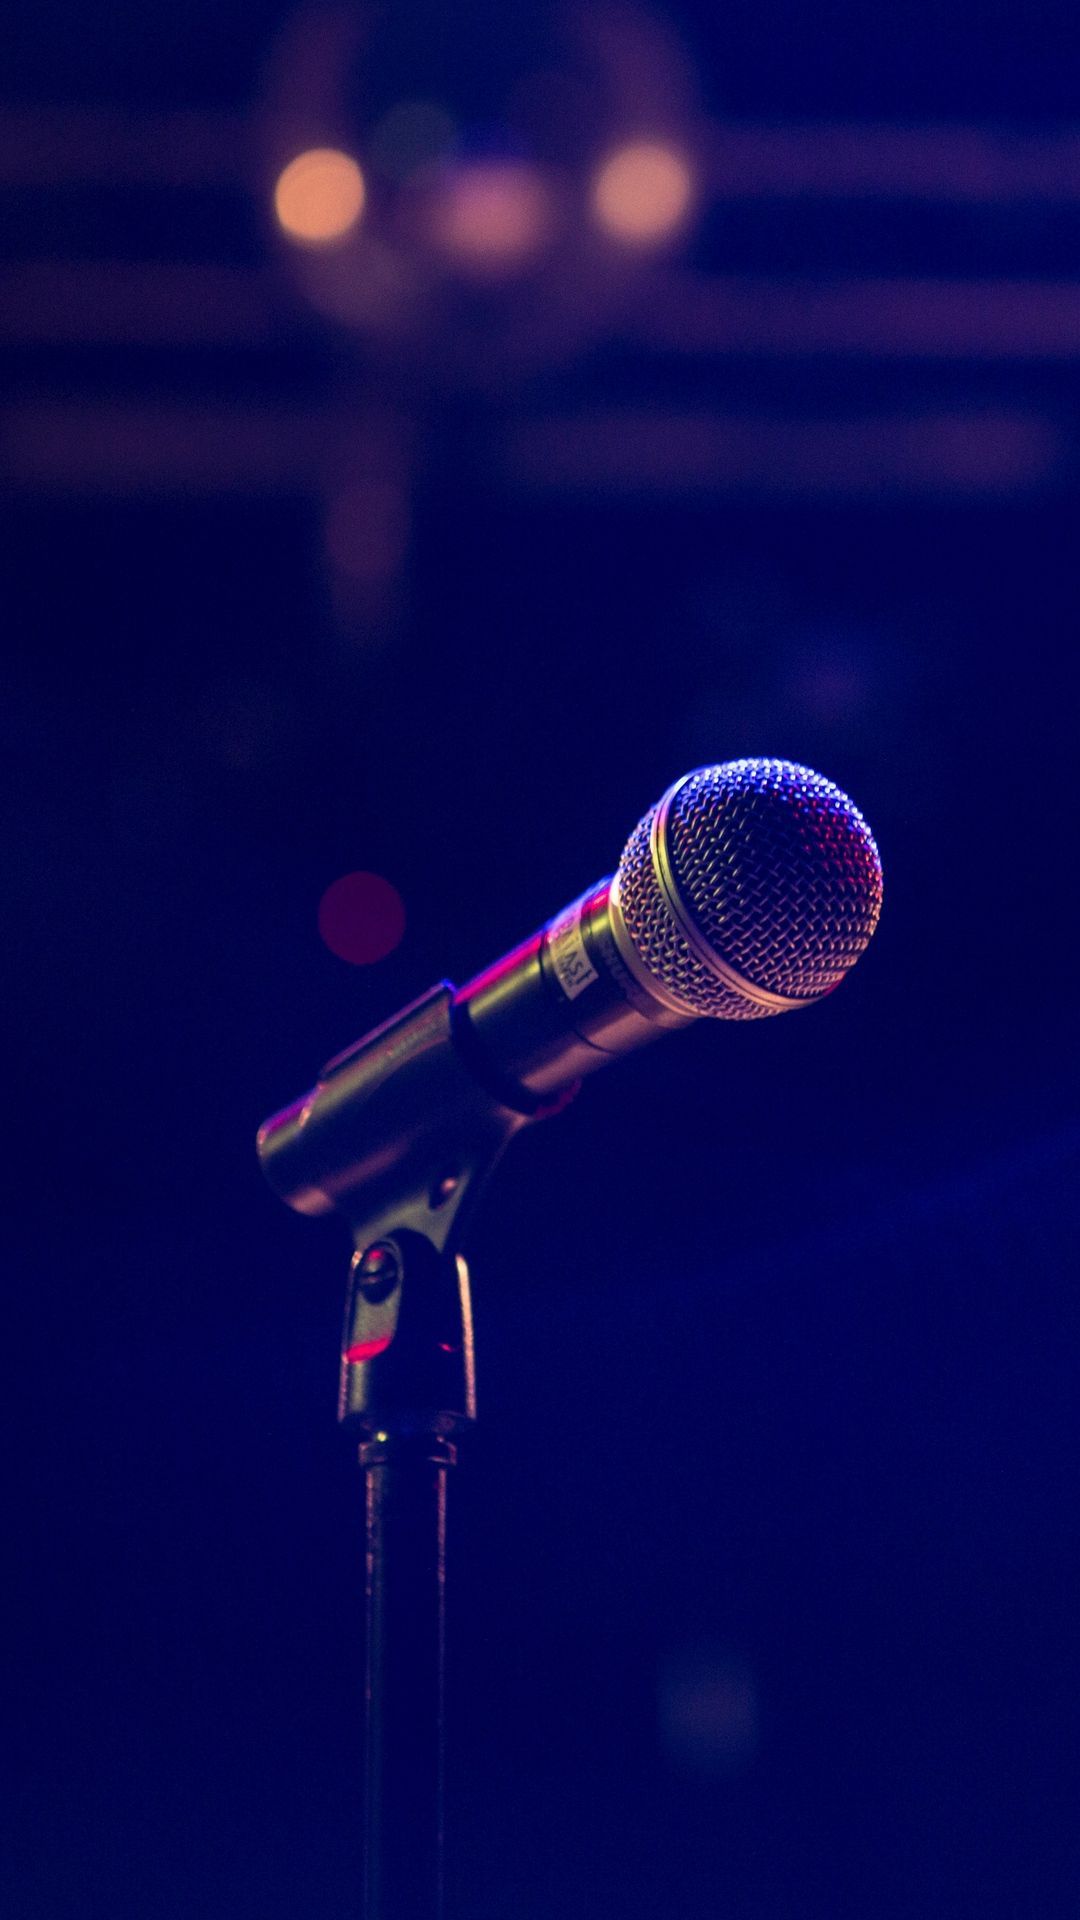 Microphone Wallpaper in dark blue background. Dark blue